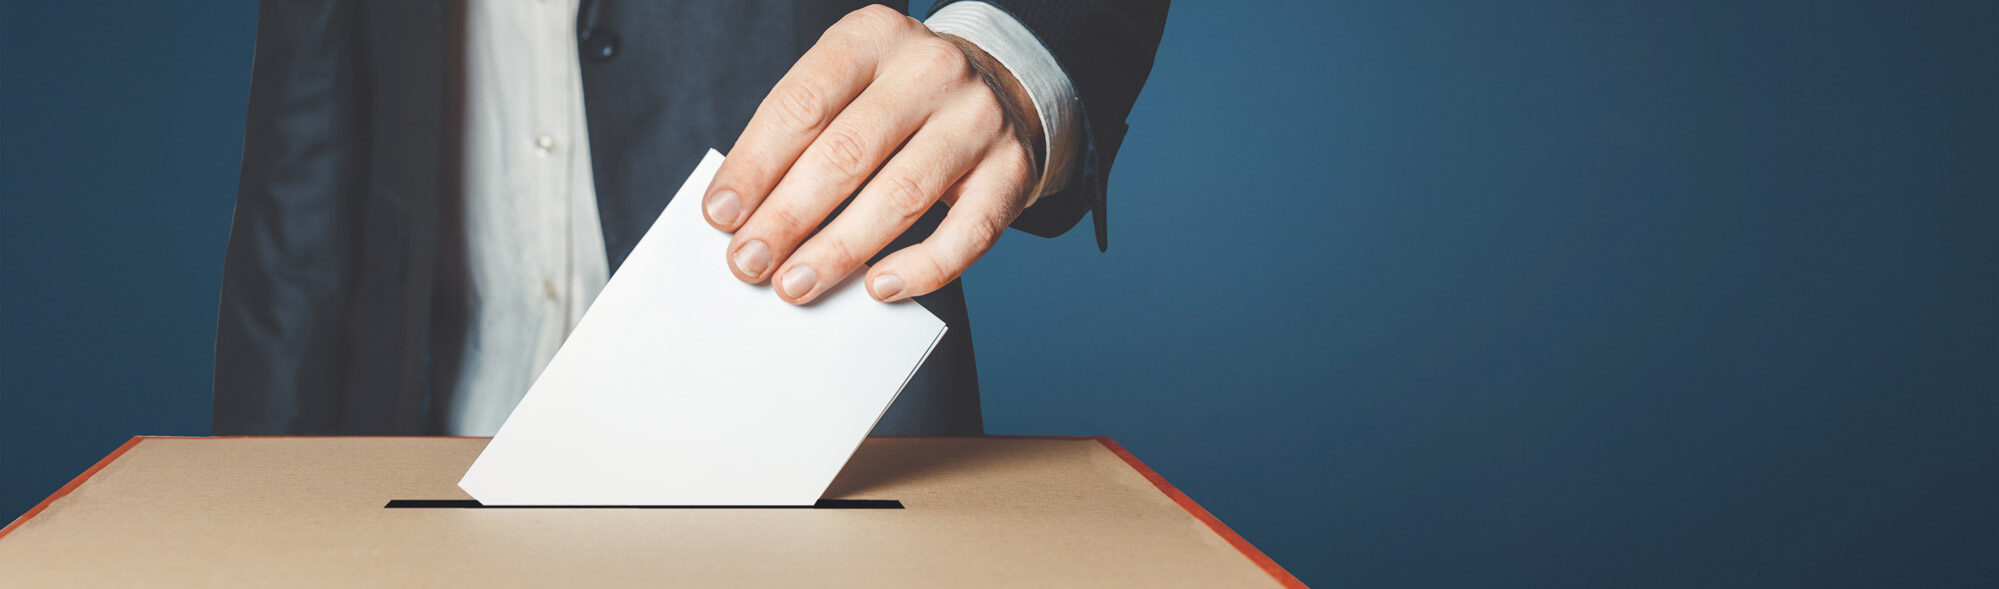 Stimmzetteleinwurf an einer Wahlurne